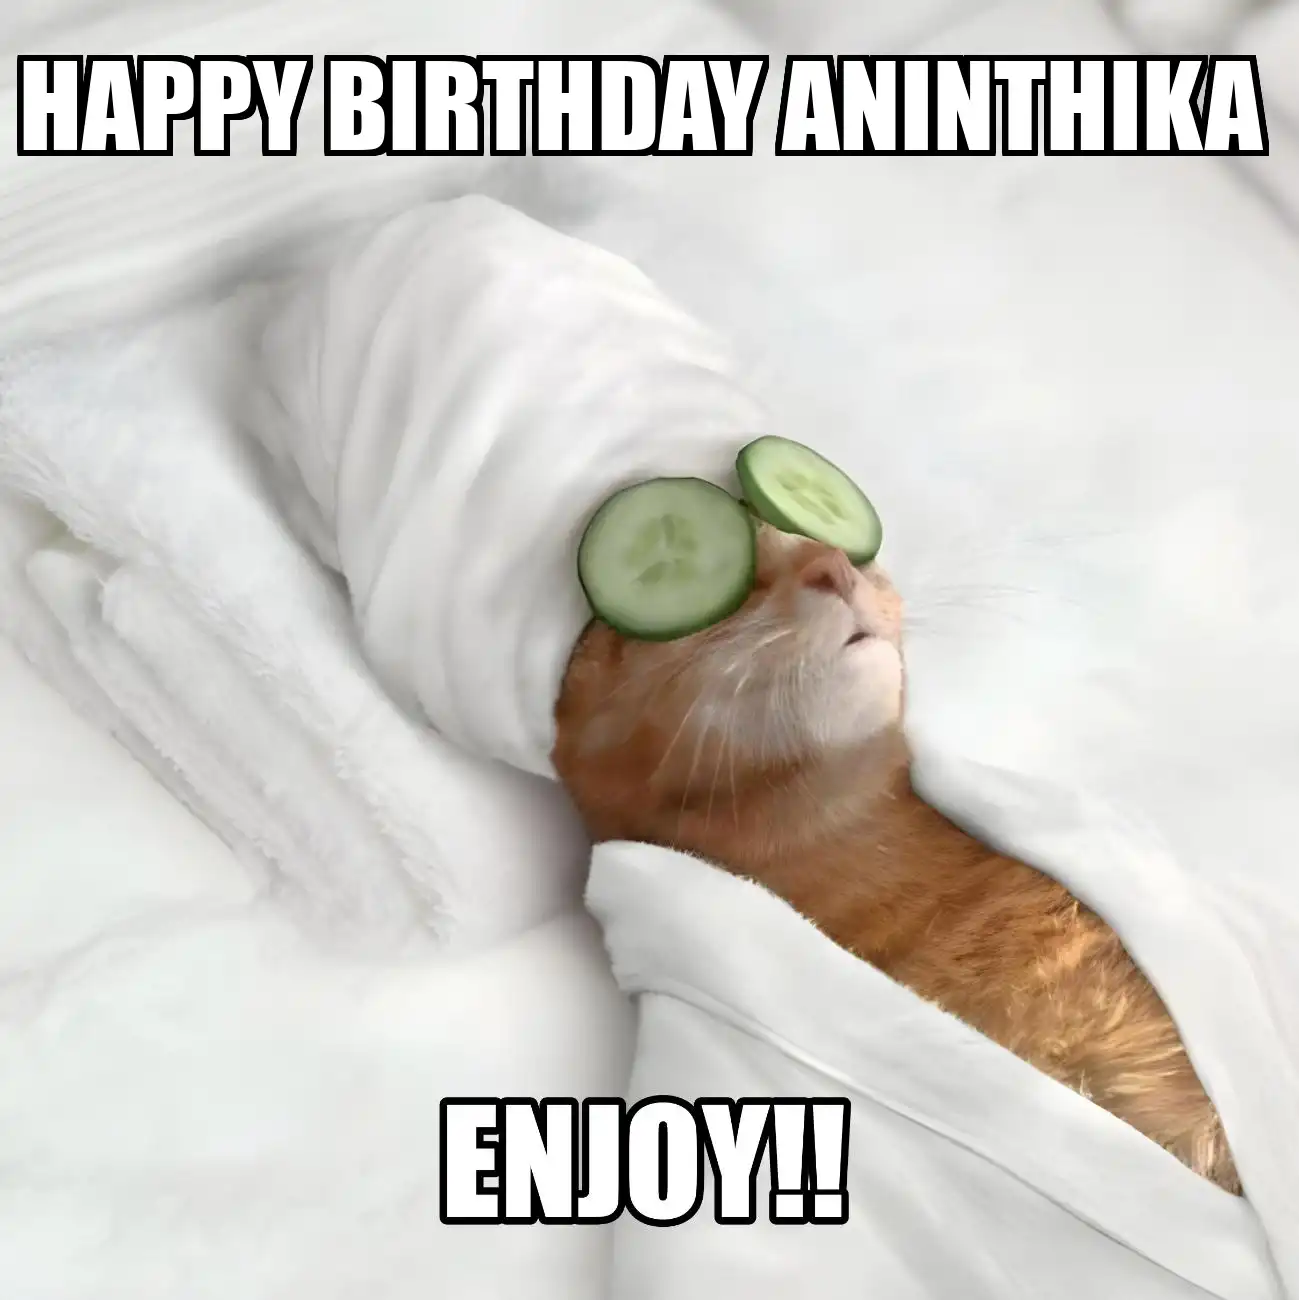 Happy Birthday Aninthika Enjoy Cat Meme